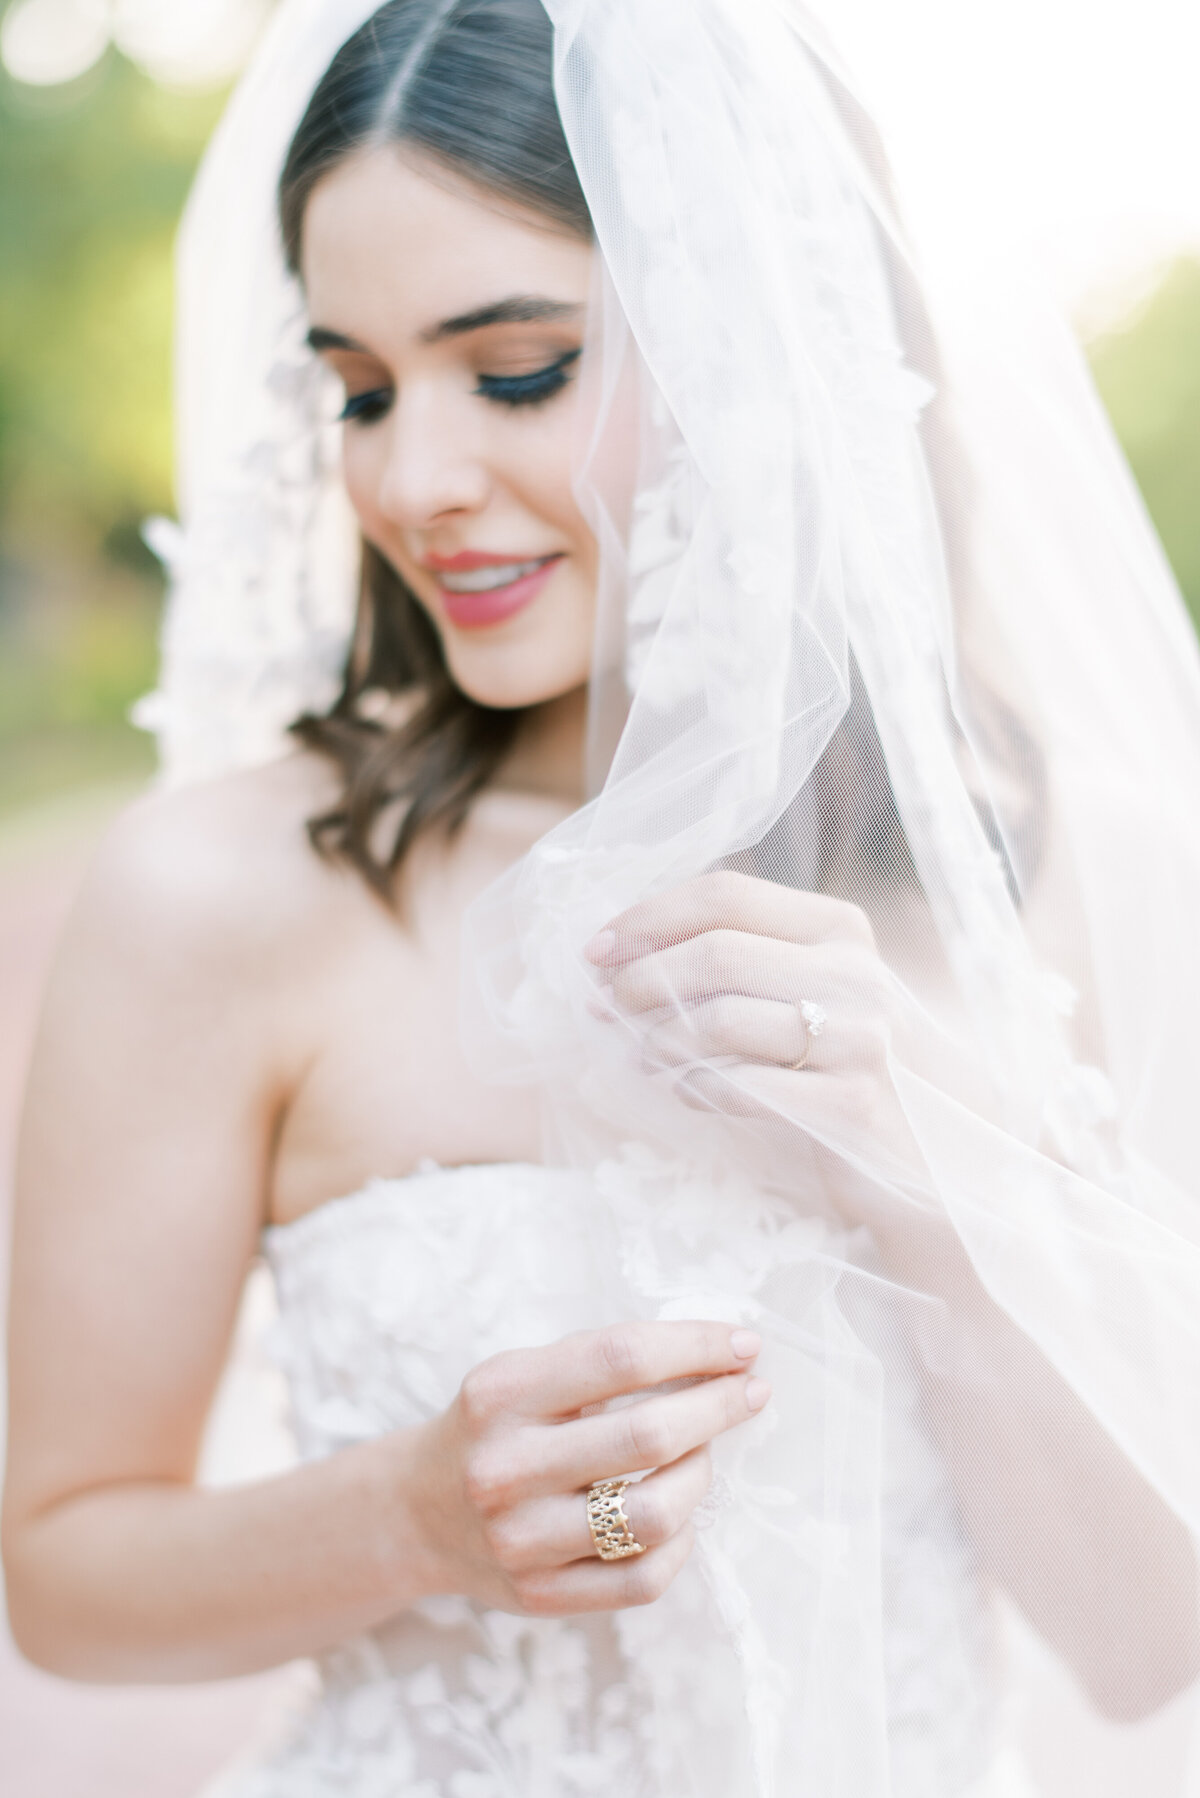 Romantic Bridal Portrait of Bride with Veil